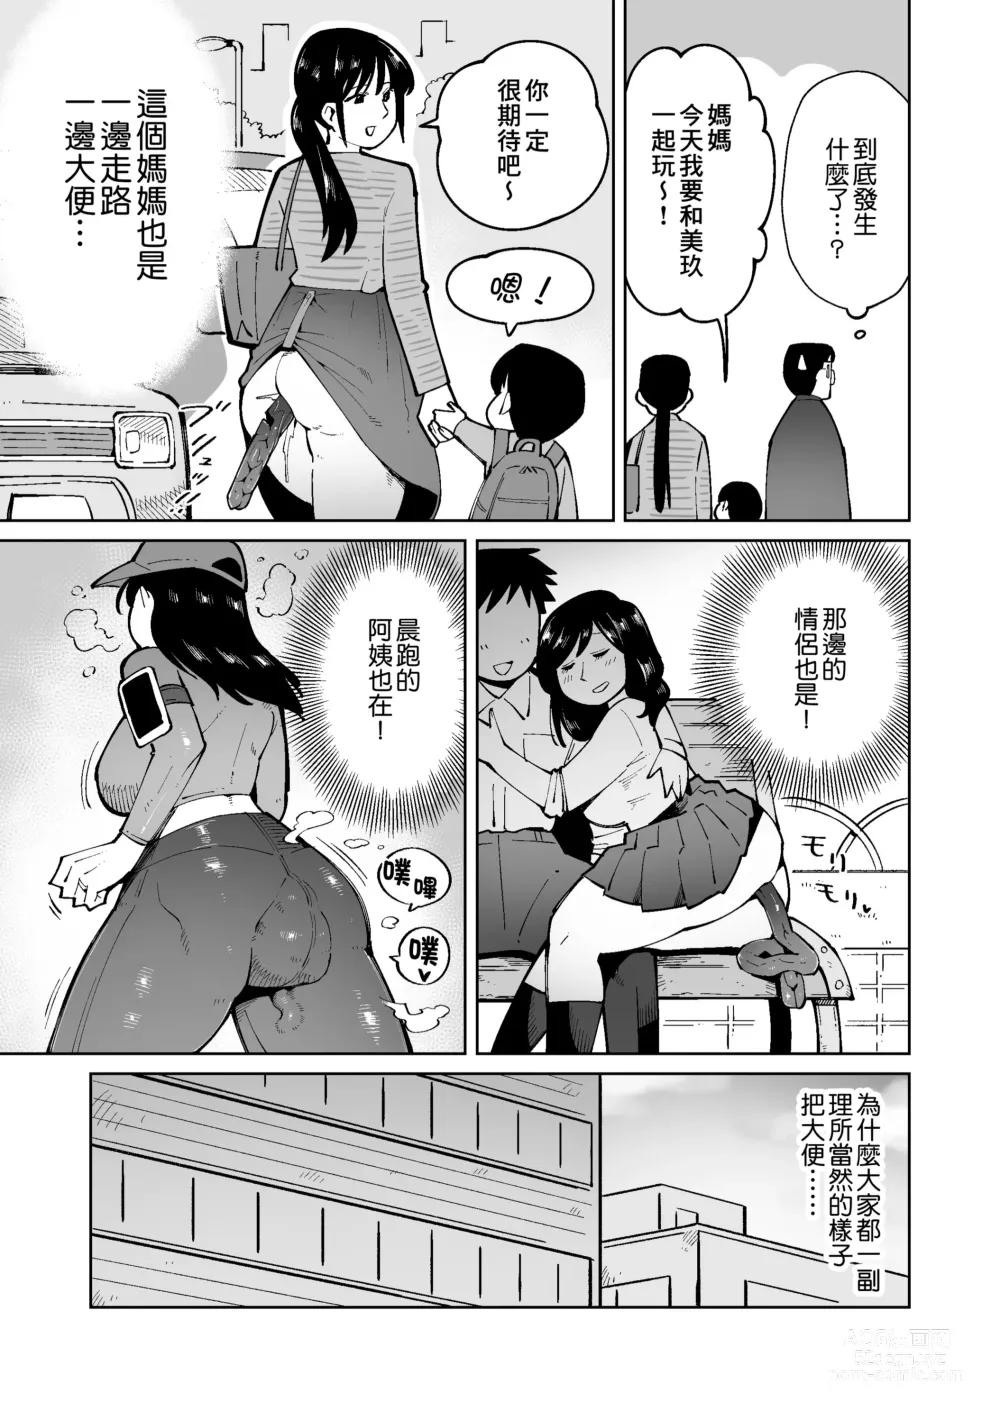 Page 4 of doujinshi 早上一起床發現變成了隨地大便的世界那檔事